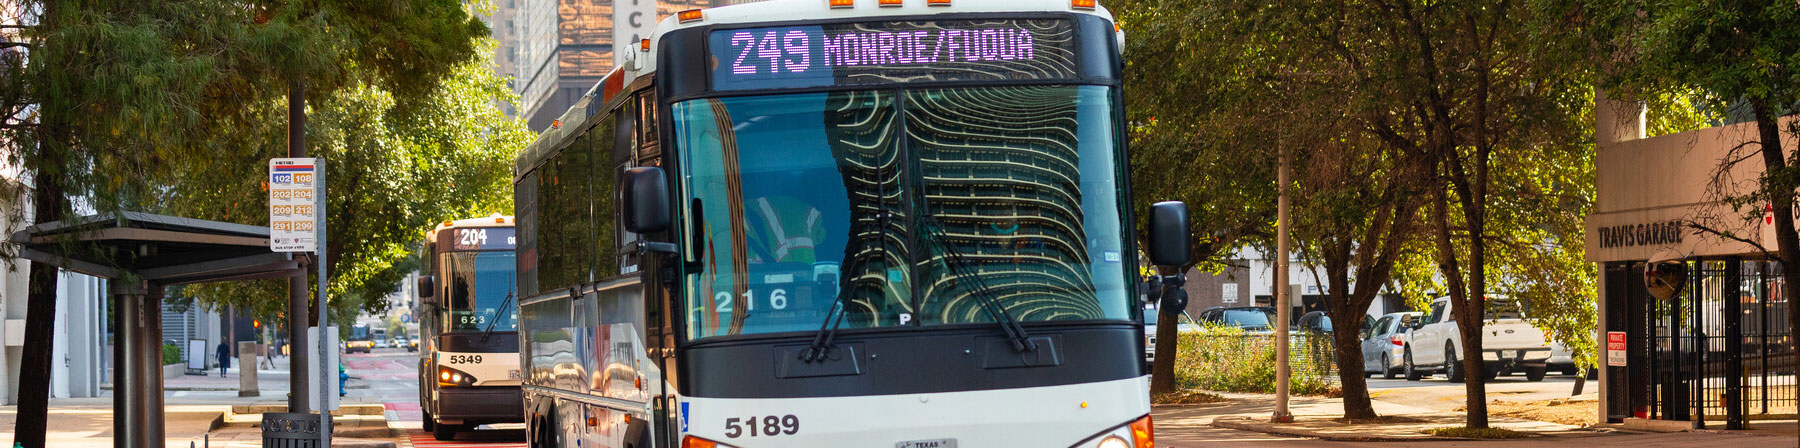 249 Bay Area / El Dorado / Fuqua / Monroe Park & Ride bus